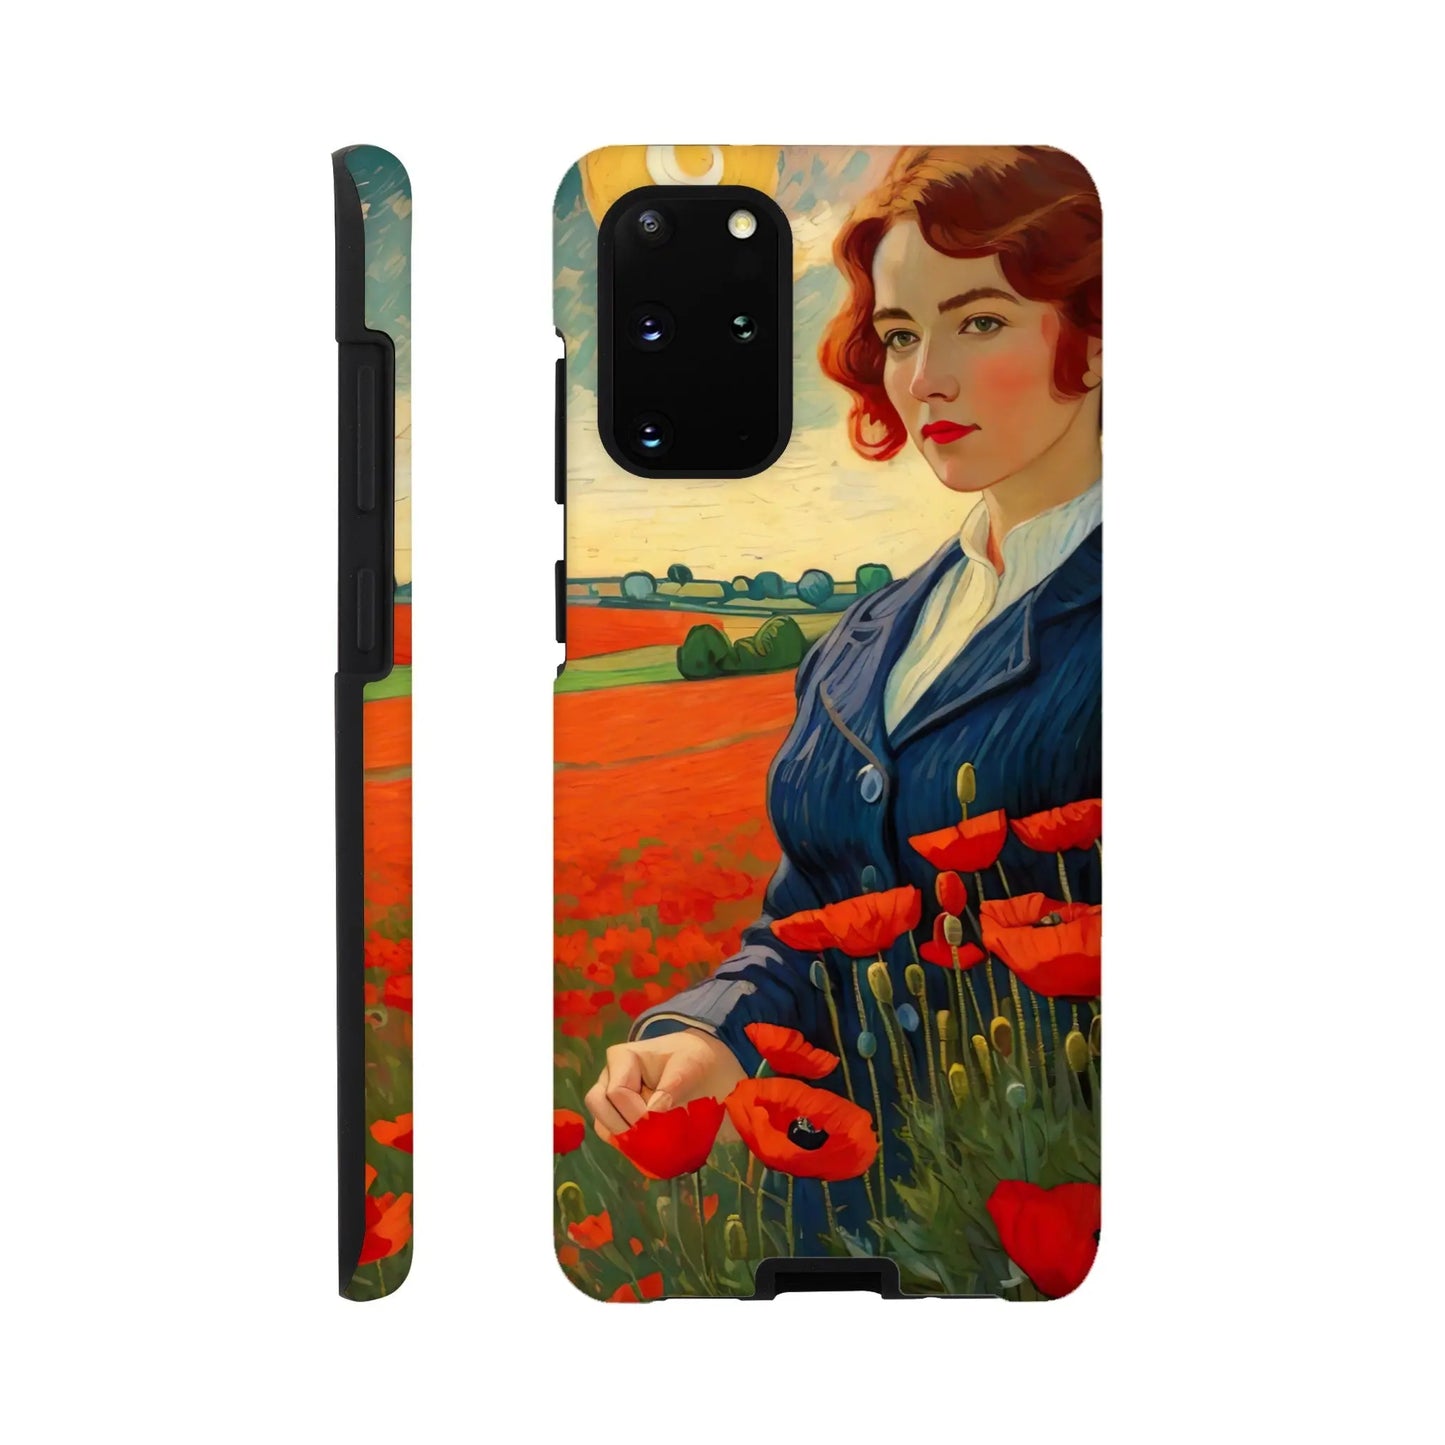 Smartphone-Hülle "Hart" - Blütezeit - Malerischer Stil, KI-Kunst RolConArt, Landschaften, Galaxy-S20-Plus